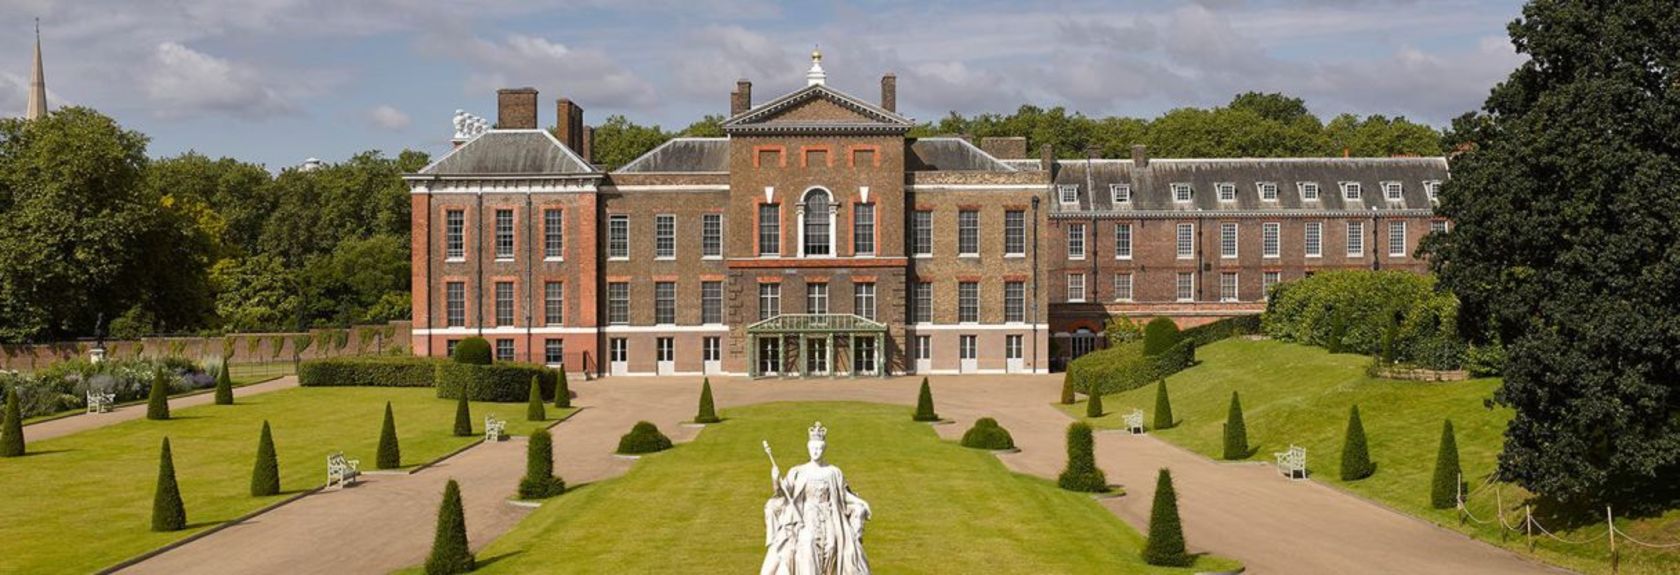 Ao lado do Buckingham Palace há outra residência real em Londres, o Kensington Palace, nos Kensington Gardens